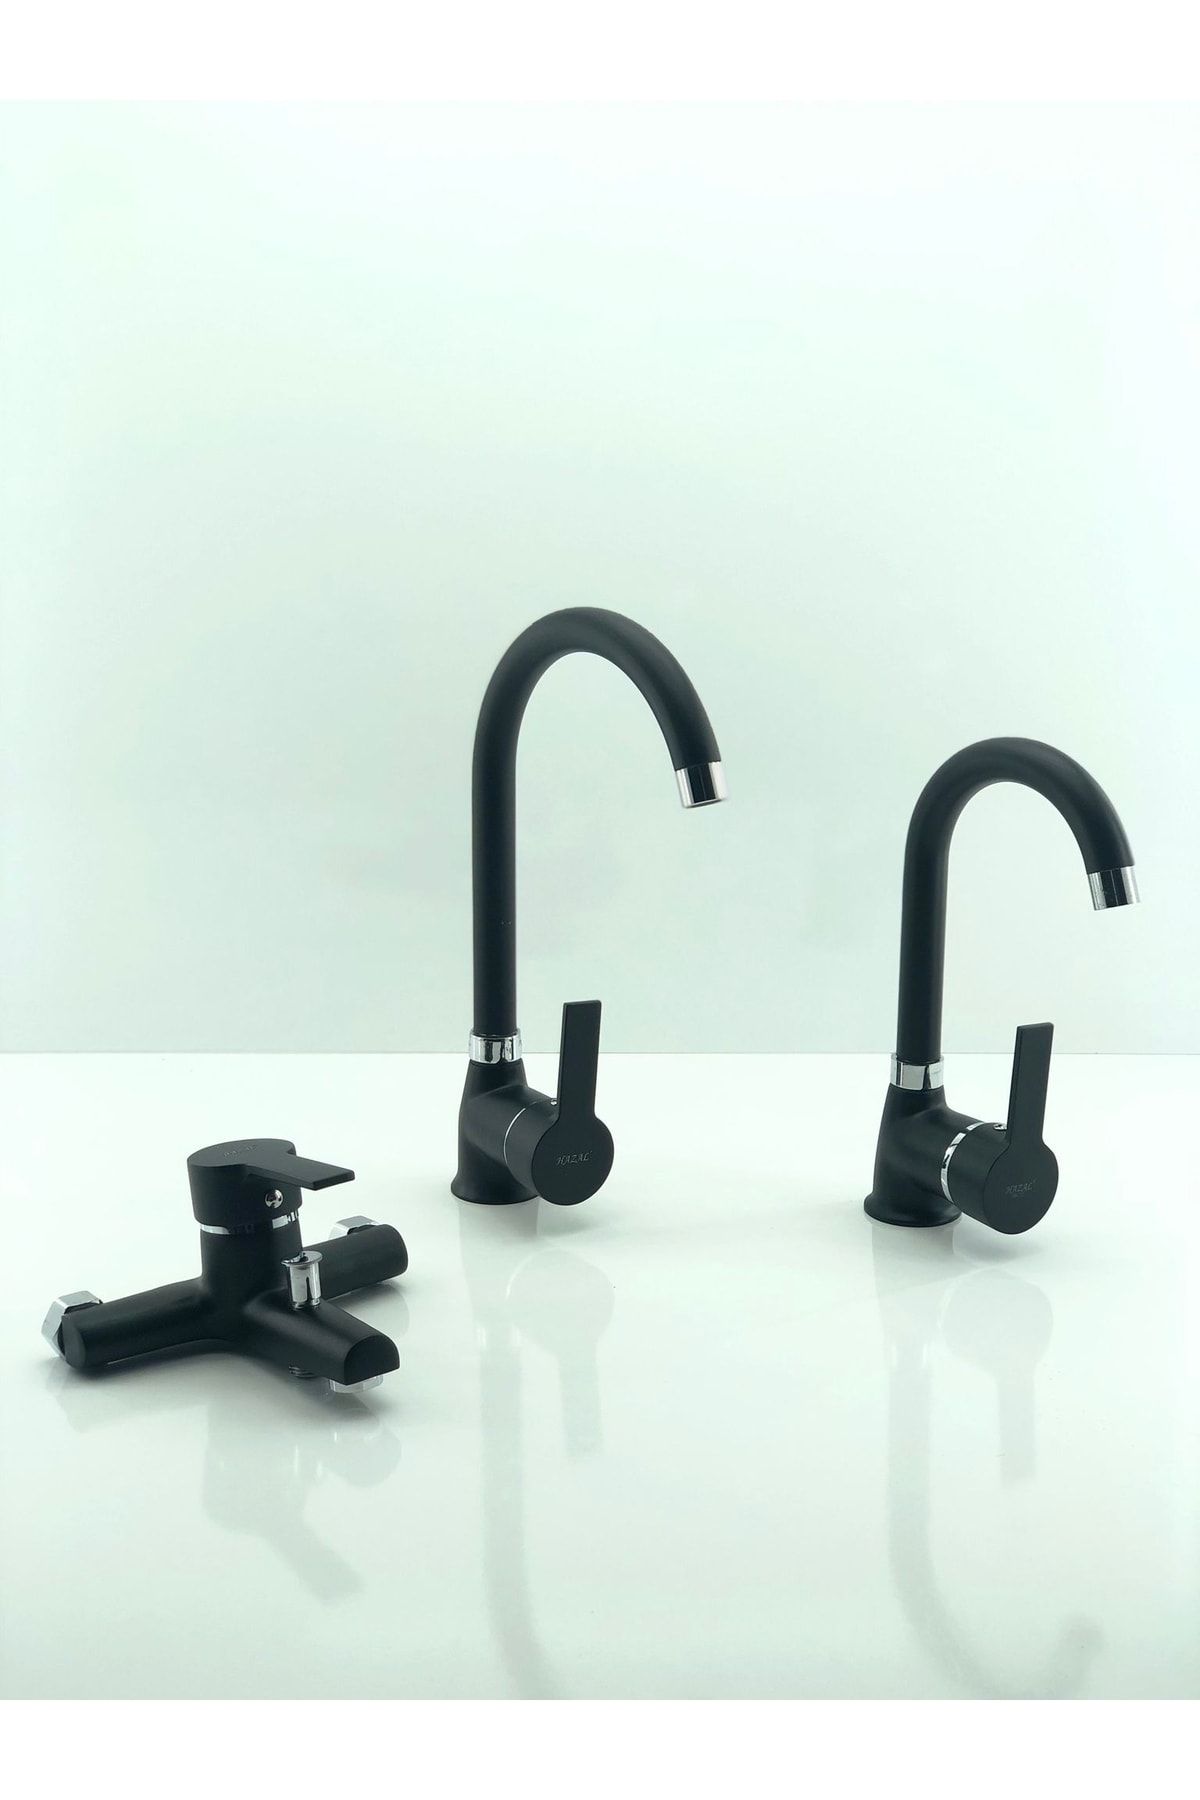 Prima Pirima Mutfak Eviye Bataryası 3'lü Set Eviye- Lavabo- Banyo Bataryası Siyah